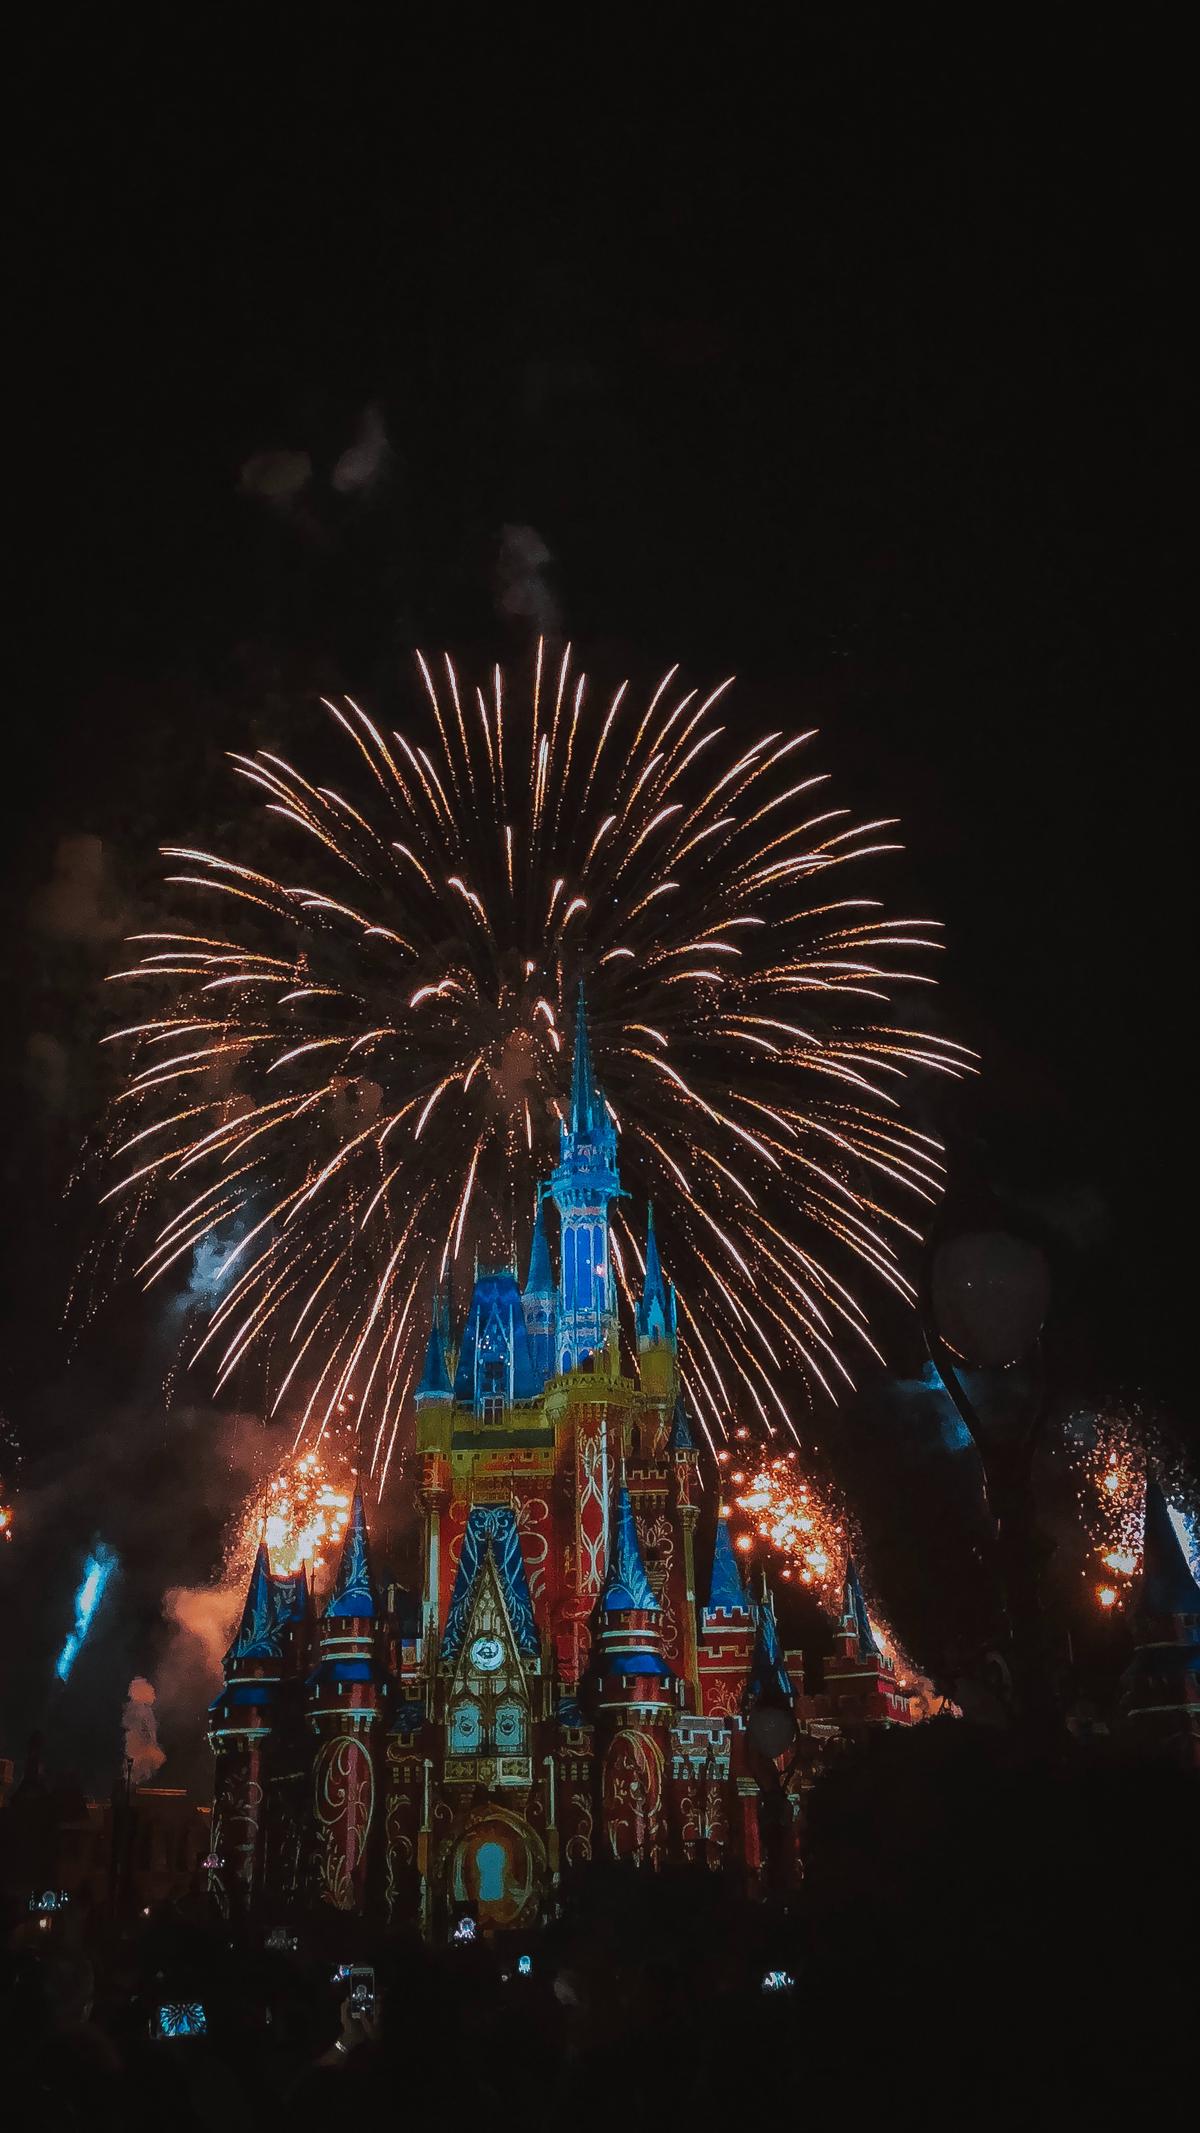 Imagen de espectáculos nocturnos de Disney con coloridos fuegos artificiales y castillo iluminado